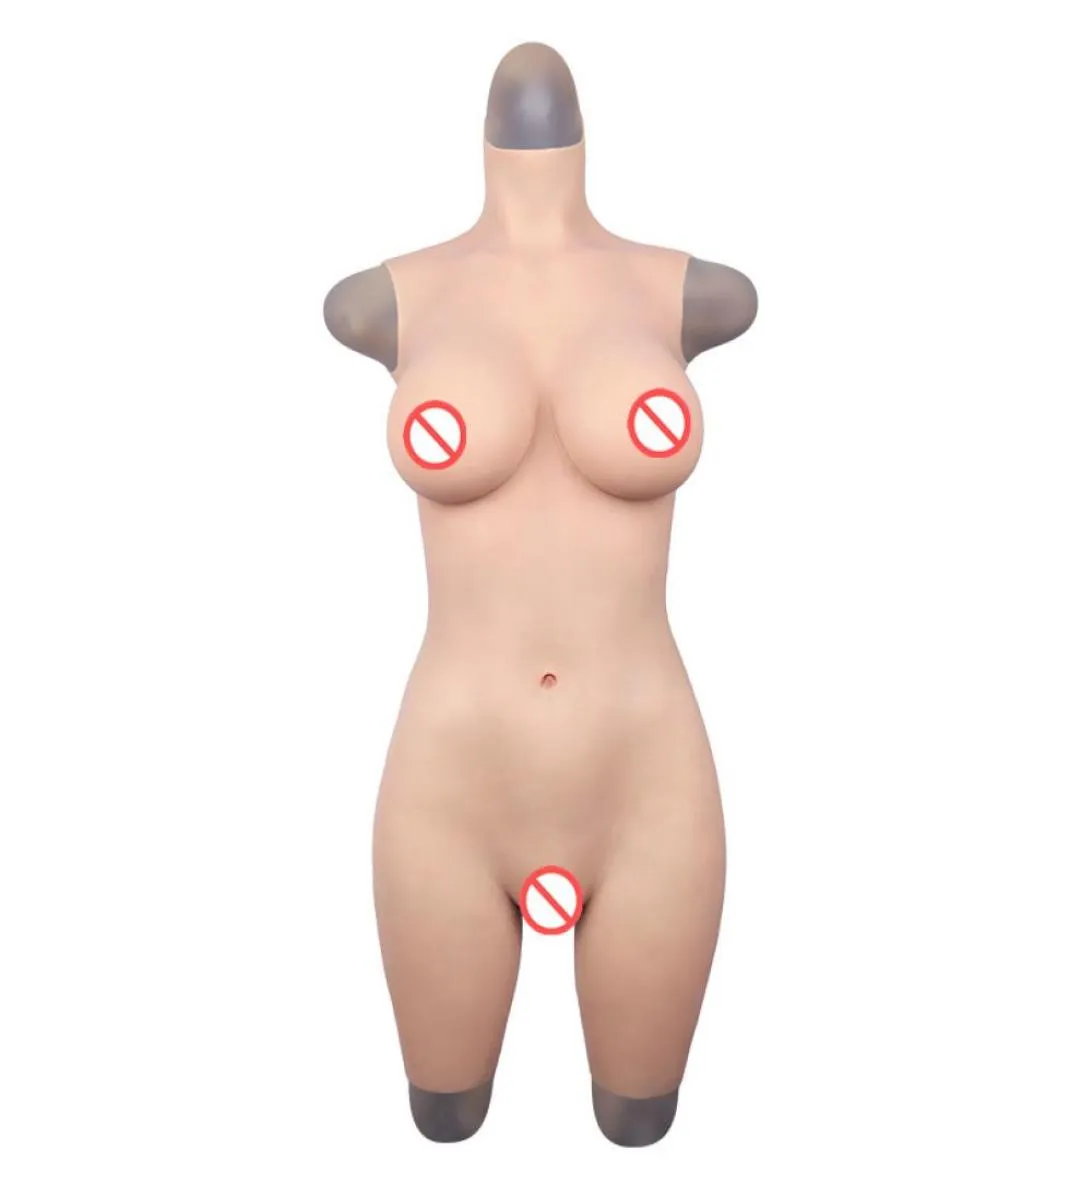 G copo peitos falsos de silicone realistas formam calças justas para transgênero transgênero crossdresser de cosplay drageQueen6565768